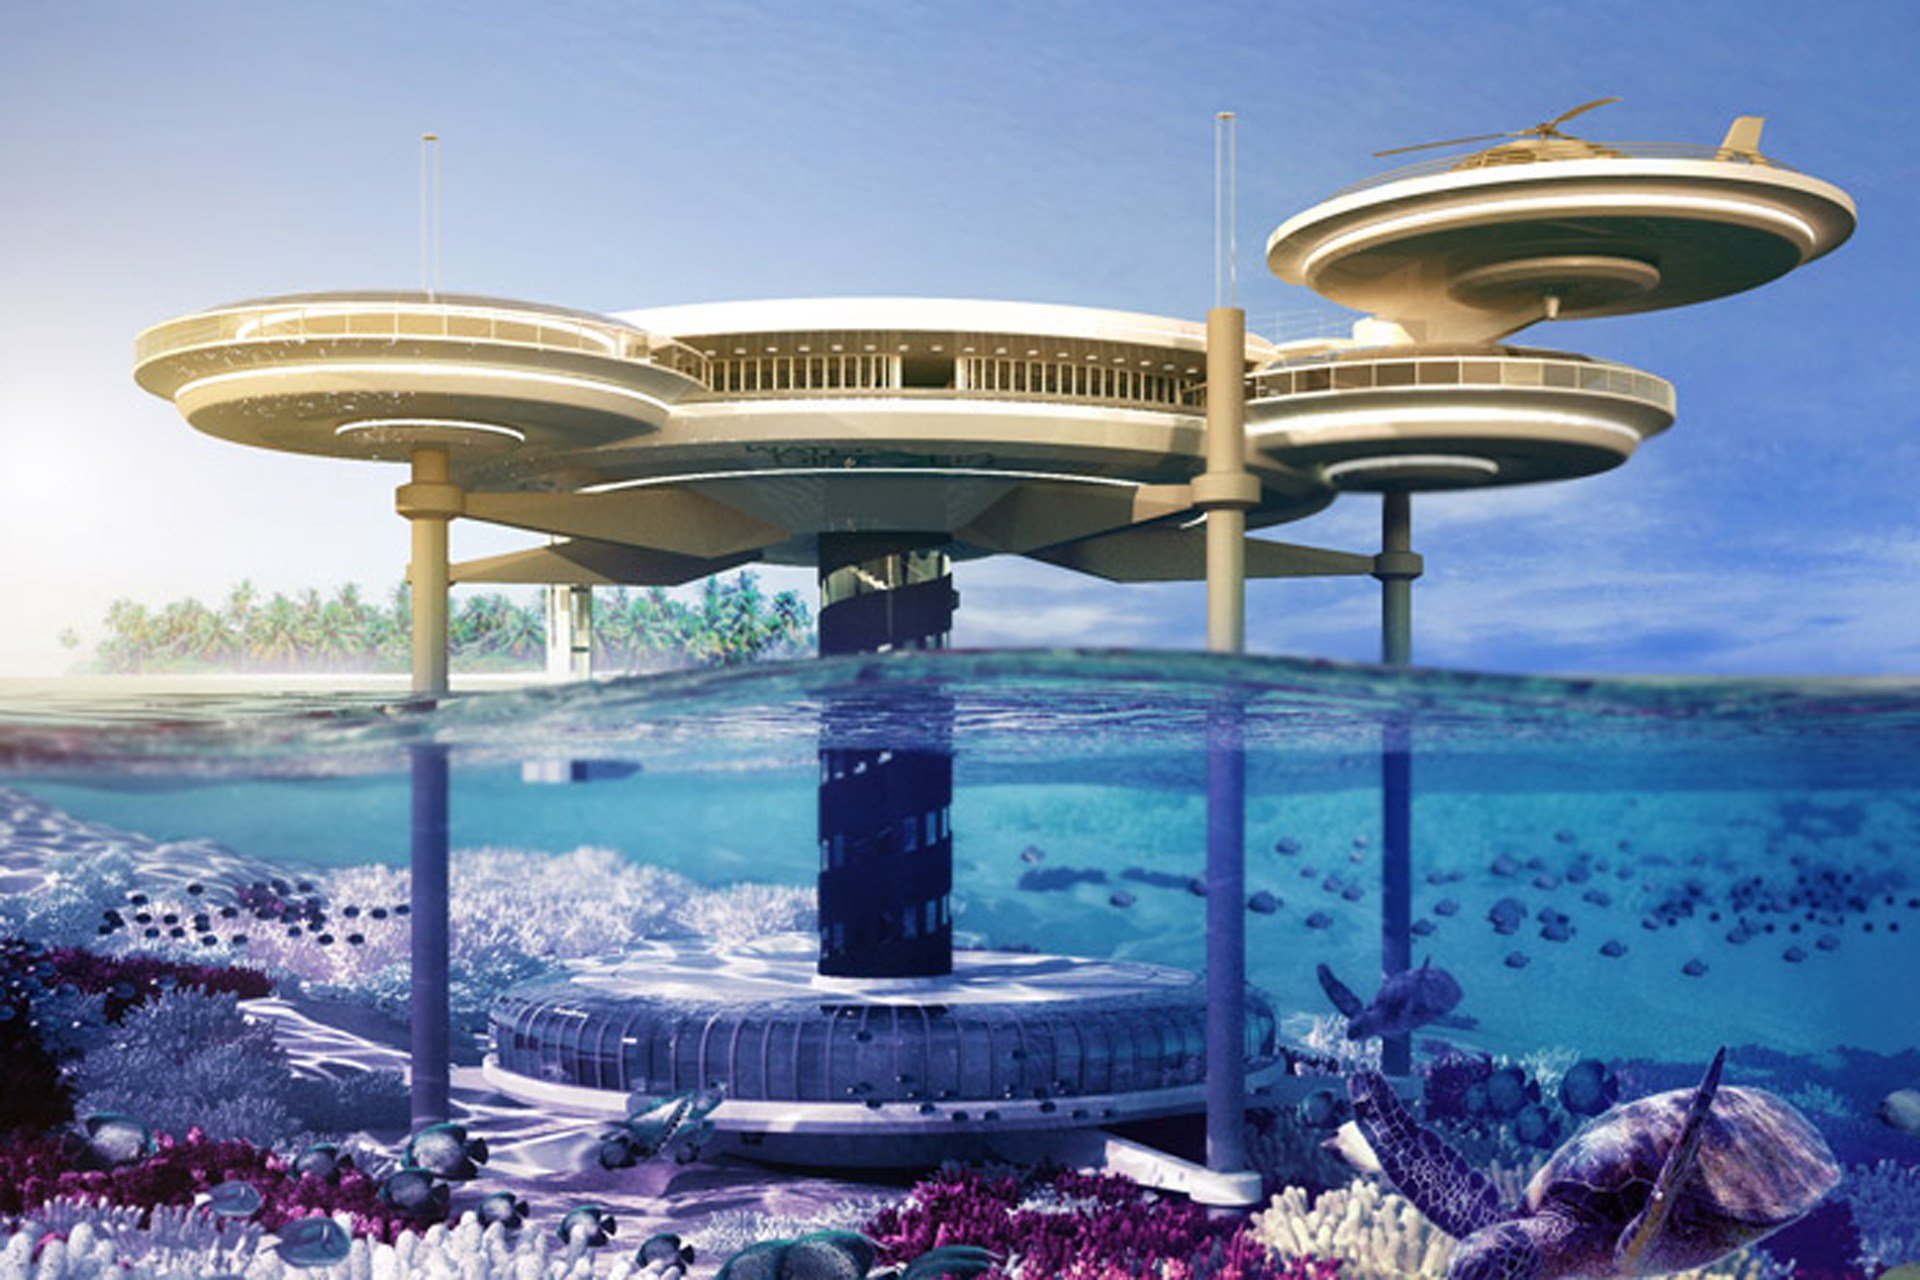 Nếu bạn muốn tận hưởng một cuộc sống ngập tràn sự ưu đãi tại khách sạn dưới nước ở Dubai, hãy đến và khám phá những hình ảnh tuyệt đẹp của nơi đây. Cảm nhận vẻ đẹp trên mặt nước và dưới đáy biển, nơi bạn được đắm mình trong không gian xanh rêu huyền bí. 